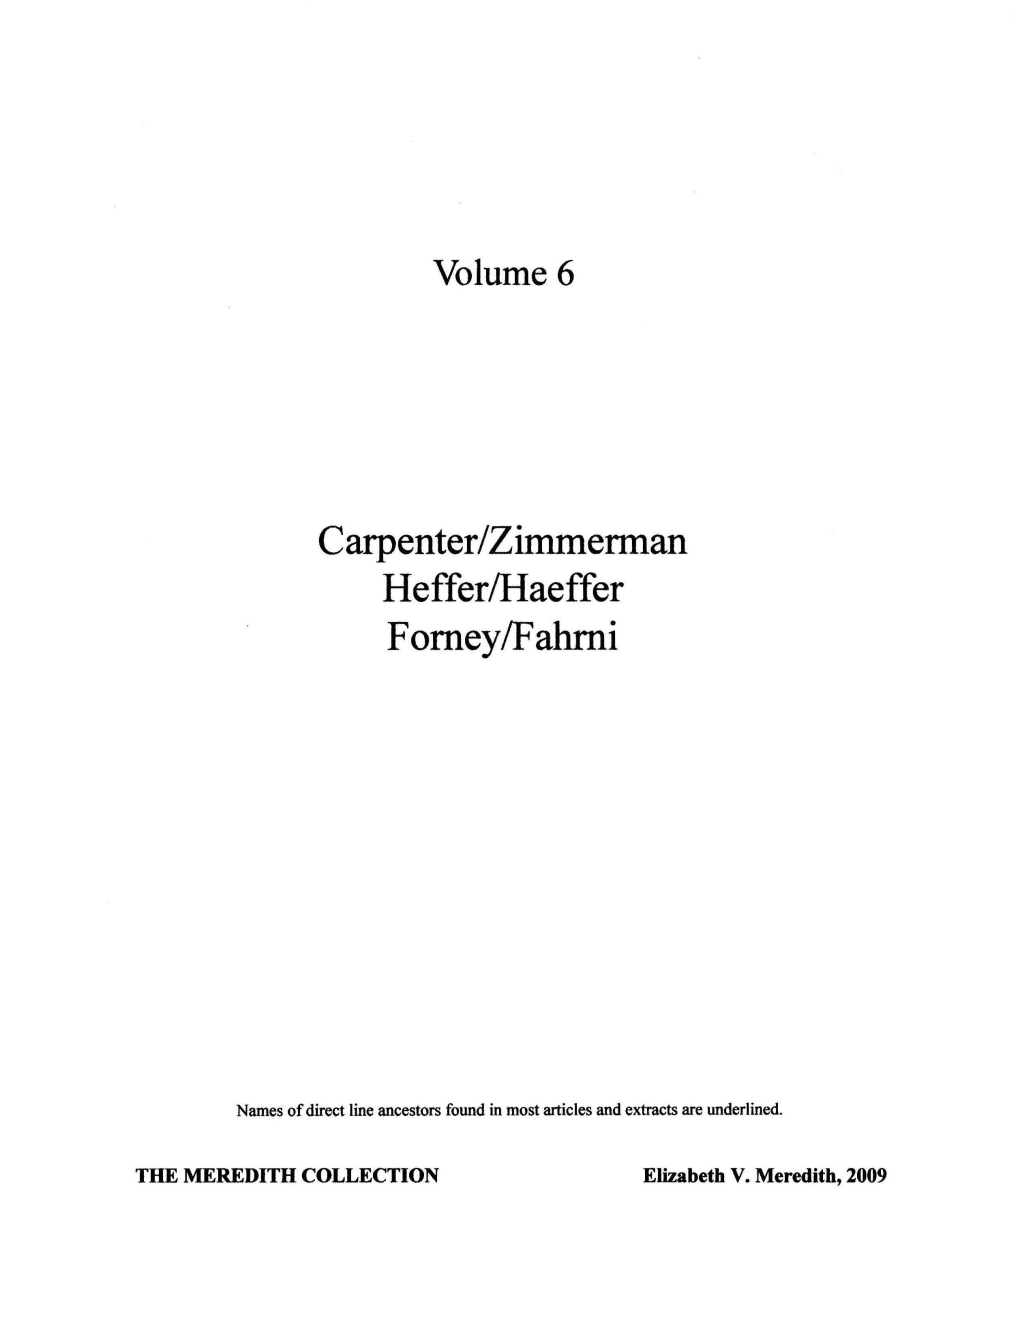 Carpenter/Zimmerman Heffer/Haeffer Forney/Fahrni